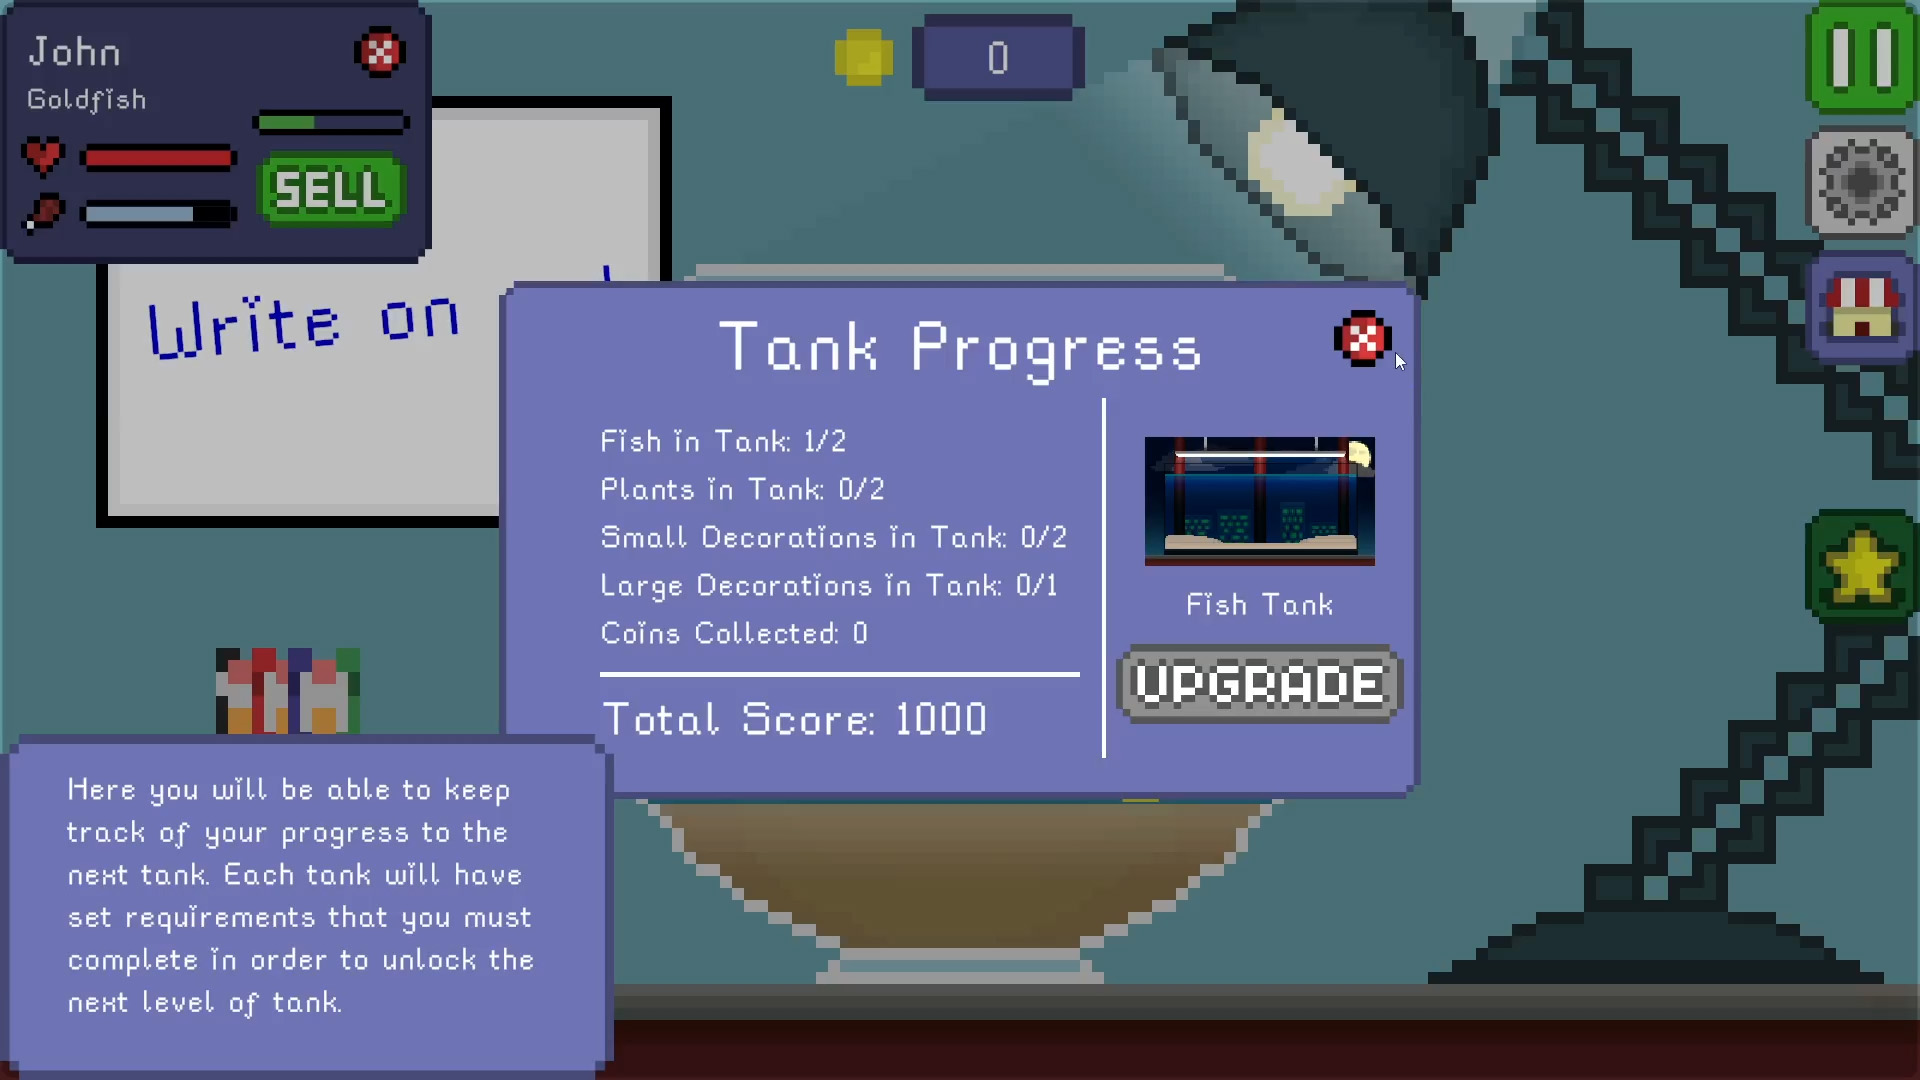 My Fish Tank Progress Menu